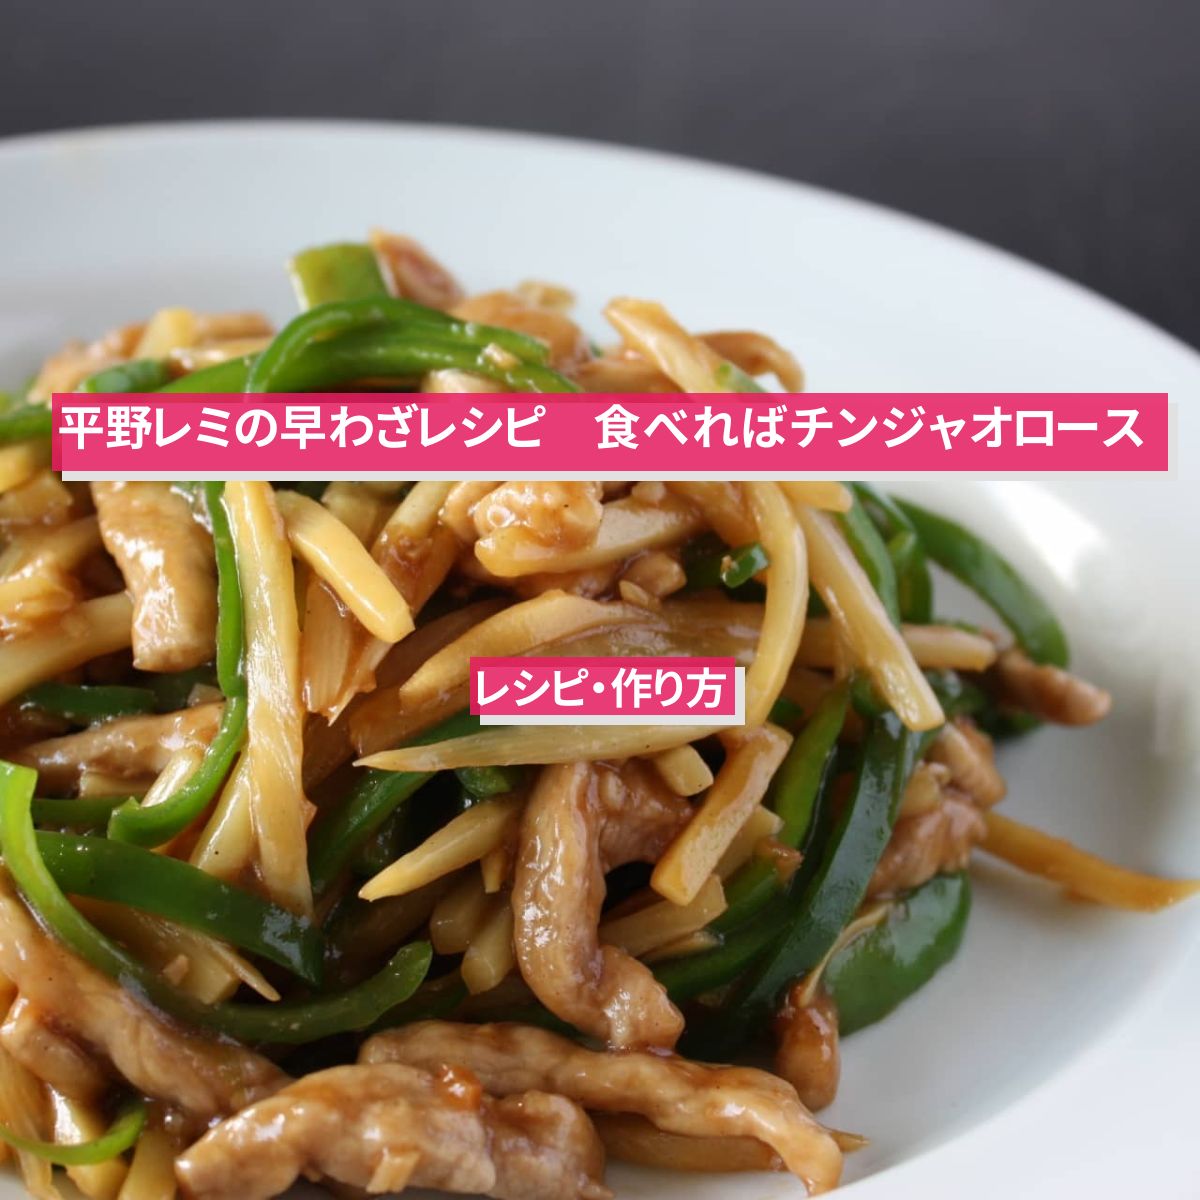 【平野レミの早わざレシピ】『食べればチンジャオロース』のレシピ・作り方